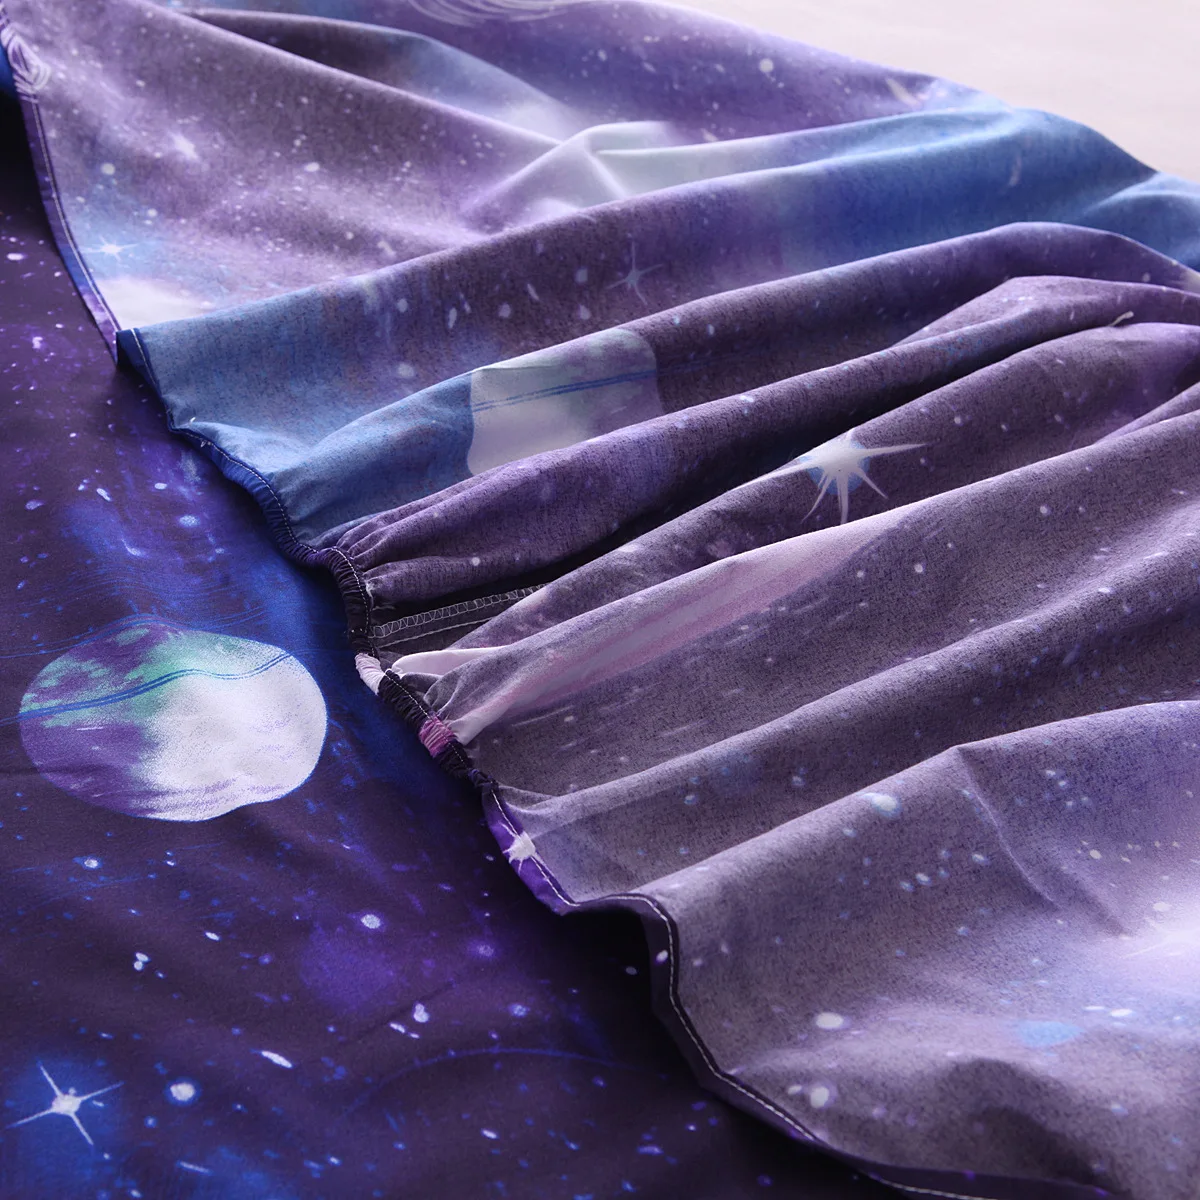 Вселенная 3D принт постельных принадлежностей современный Galaxy плоский лист 40 см простыня+ простыни+ наволочка звездное небо постельное белье Полный размер